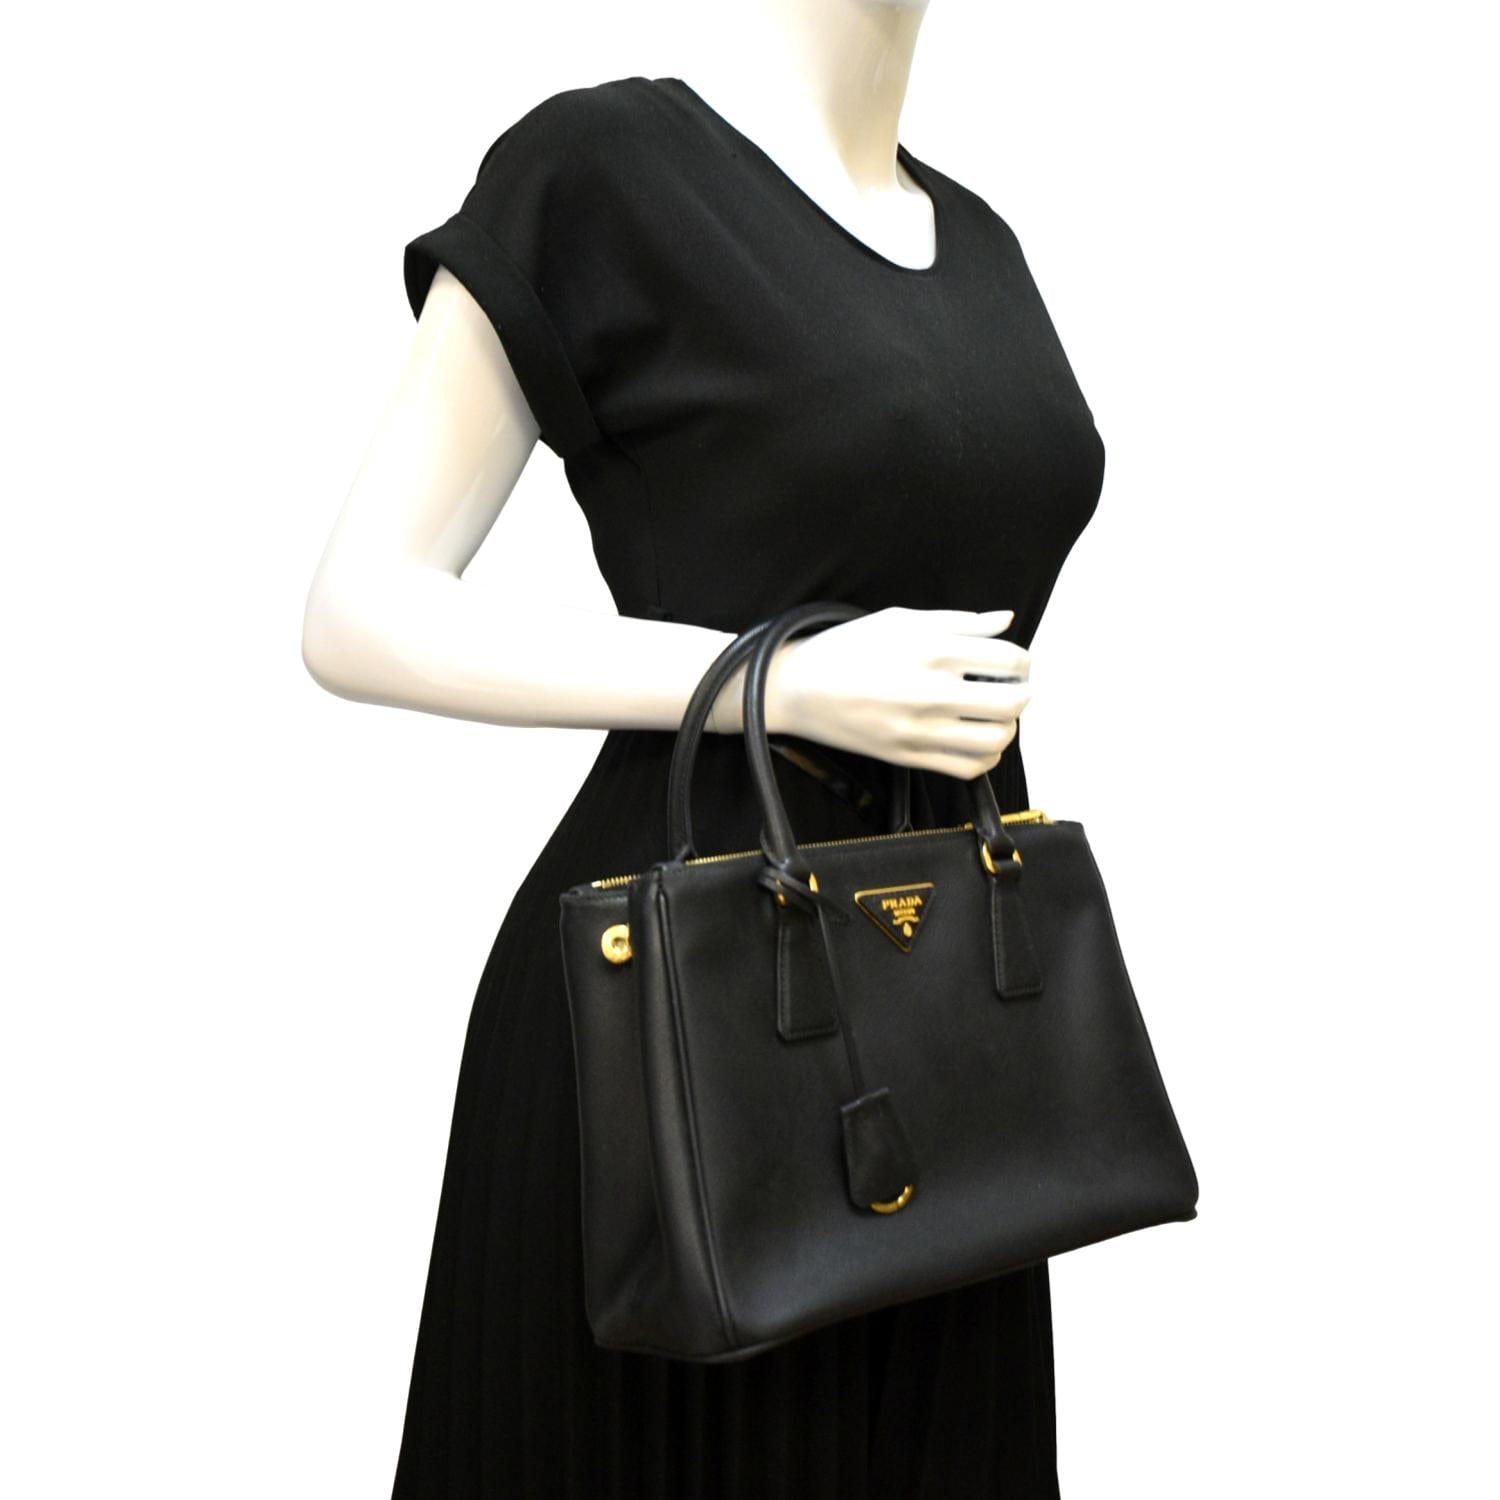 PRADA Galleria Small Saffiano Leather Tote Bag Black